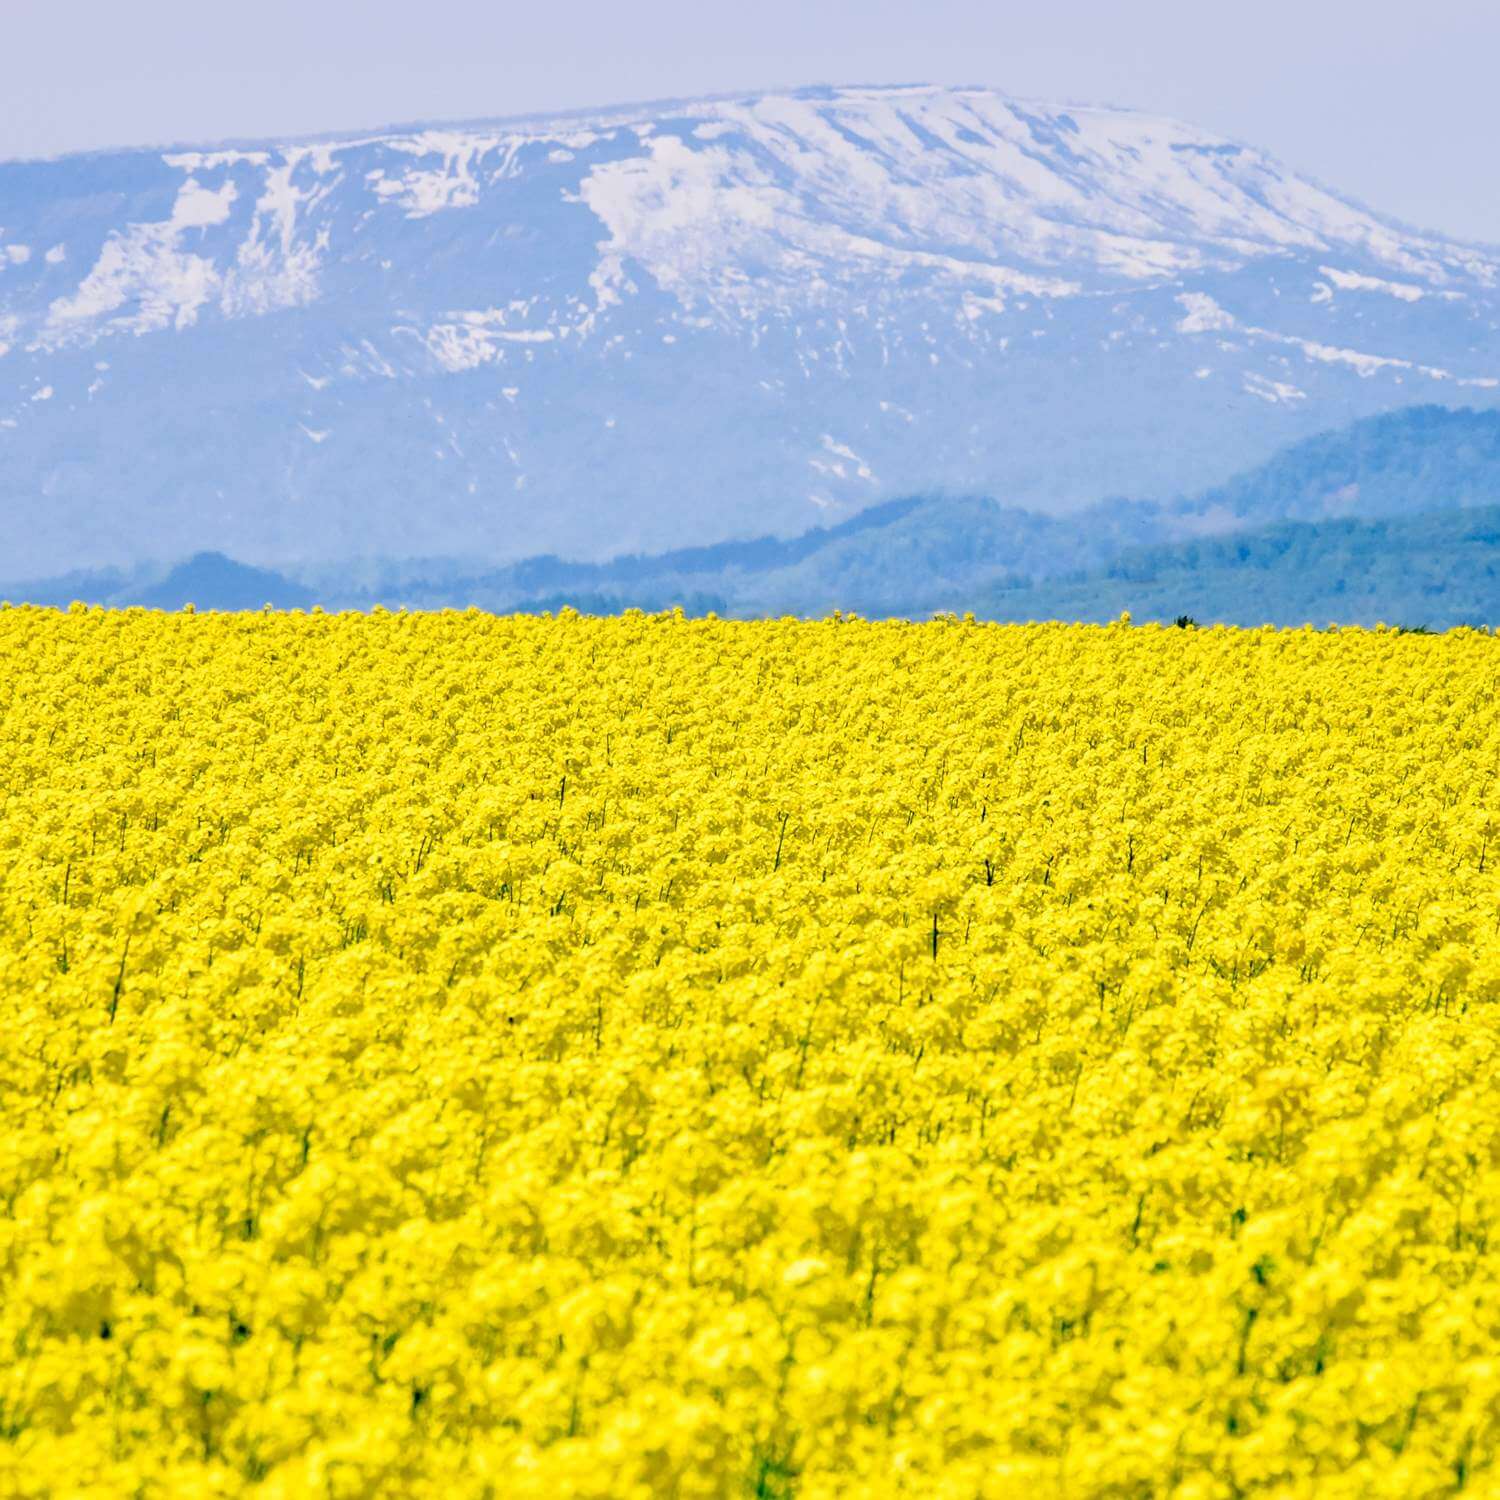 Rapeseed flower fields in Takikawa, Hokkaido = Shutterstock